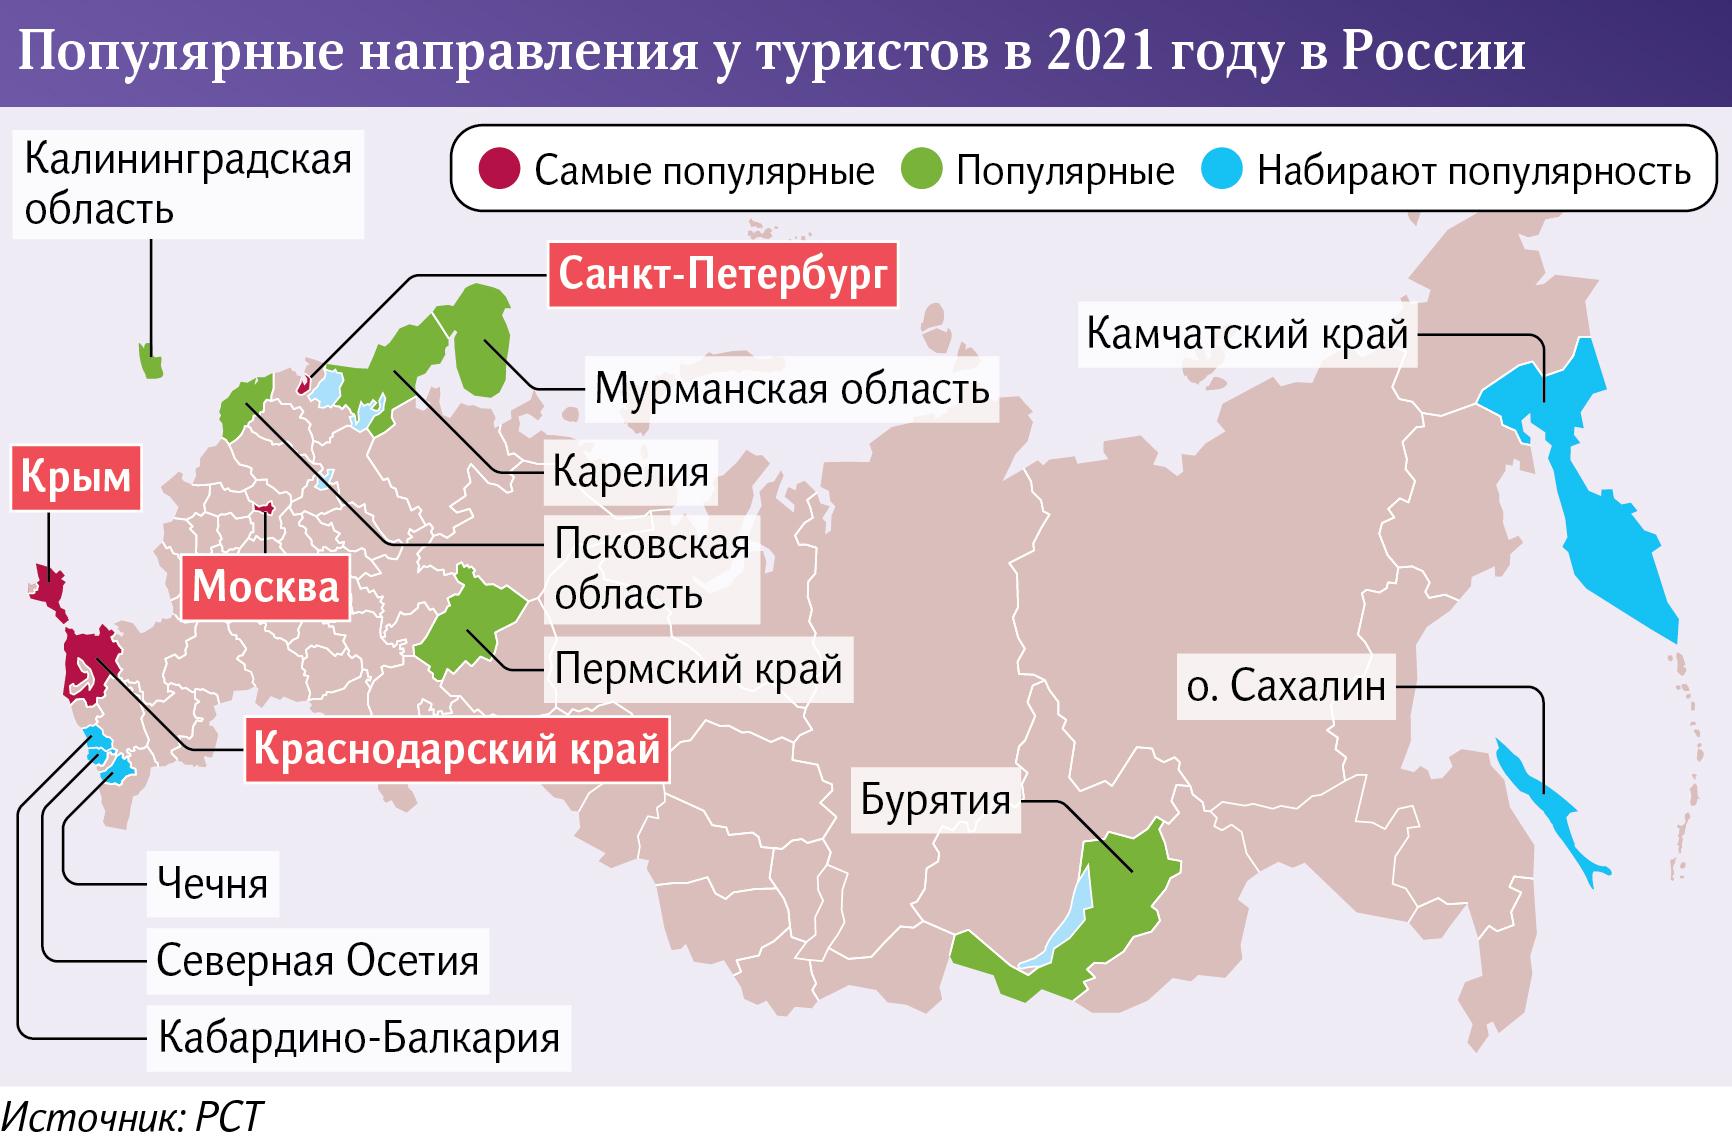 популярные направления у туристов в 2021 году в России